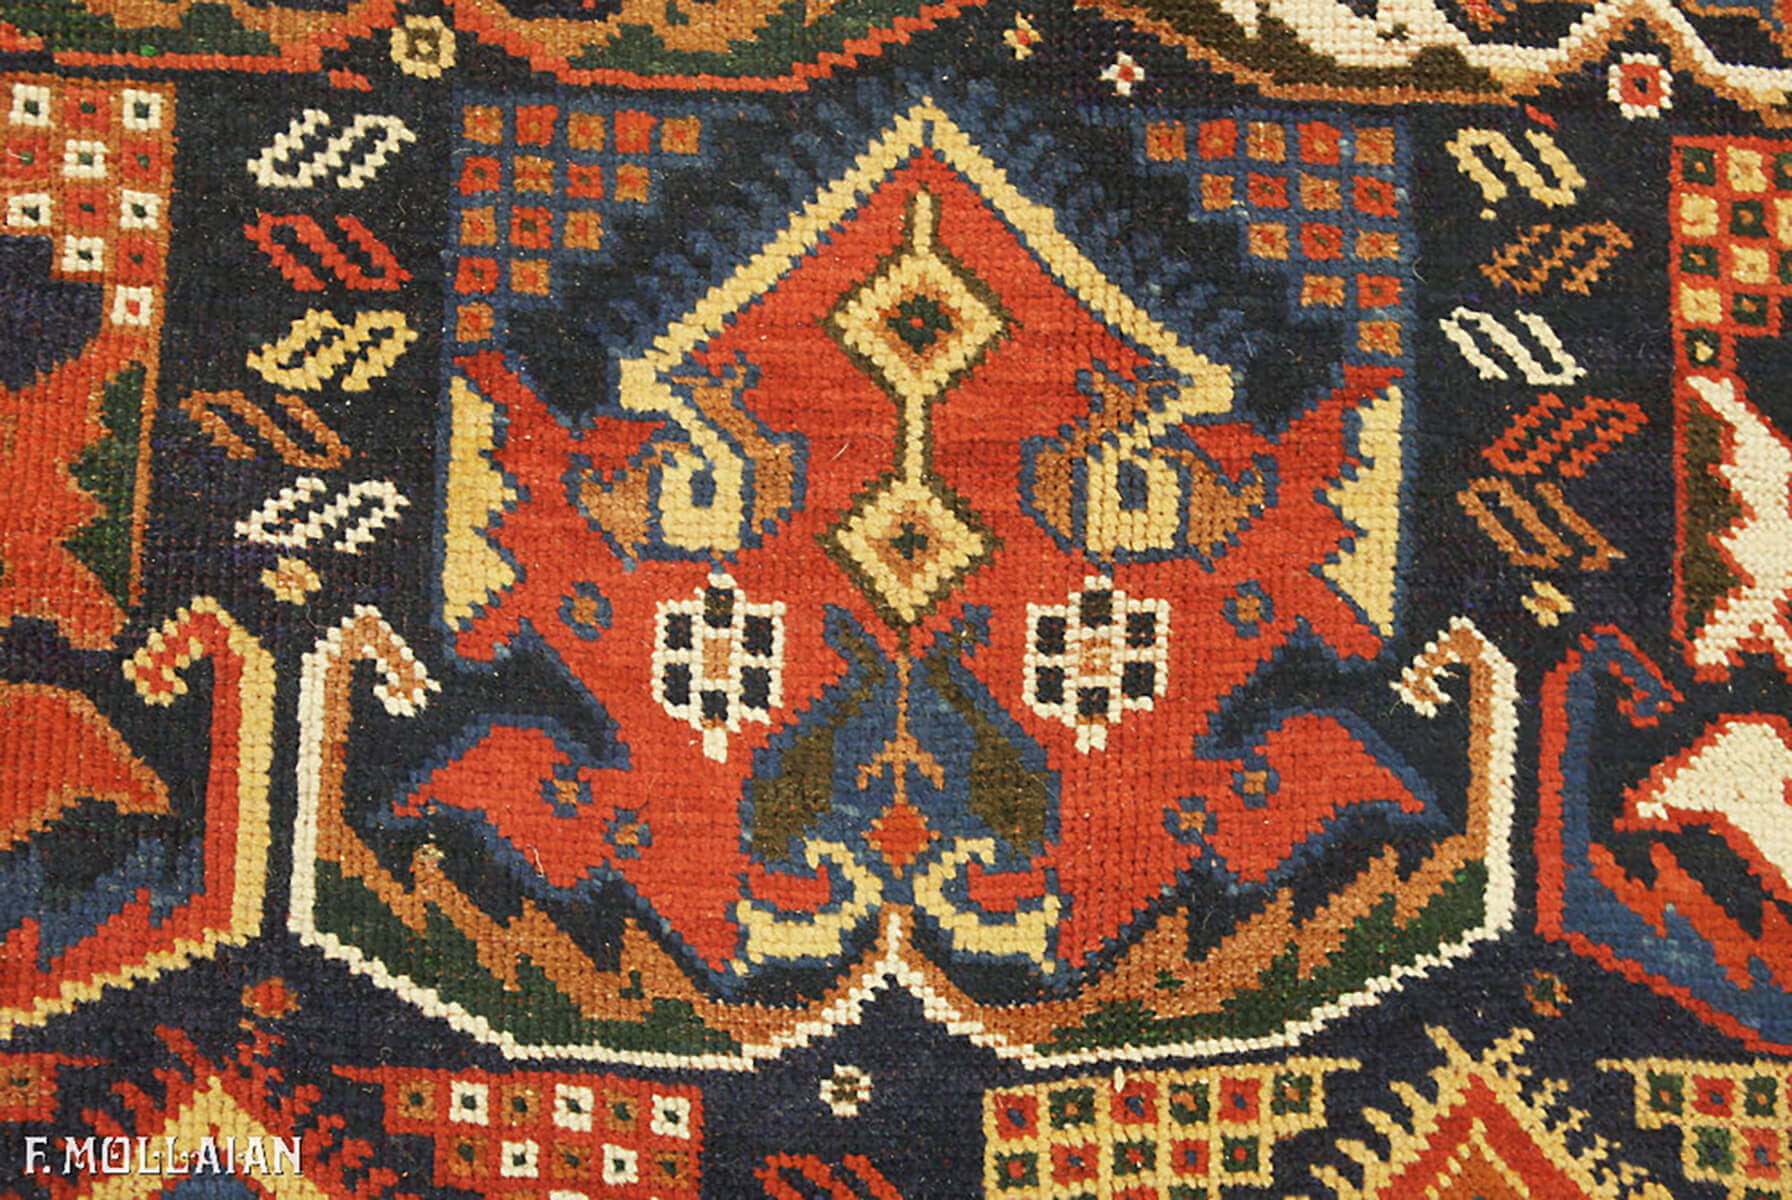 Antique Kalleh Persian Afshari Carpet n°:20278408